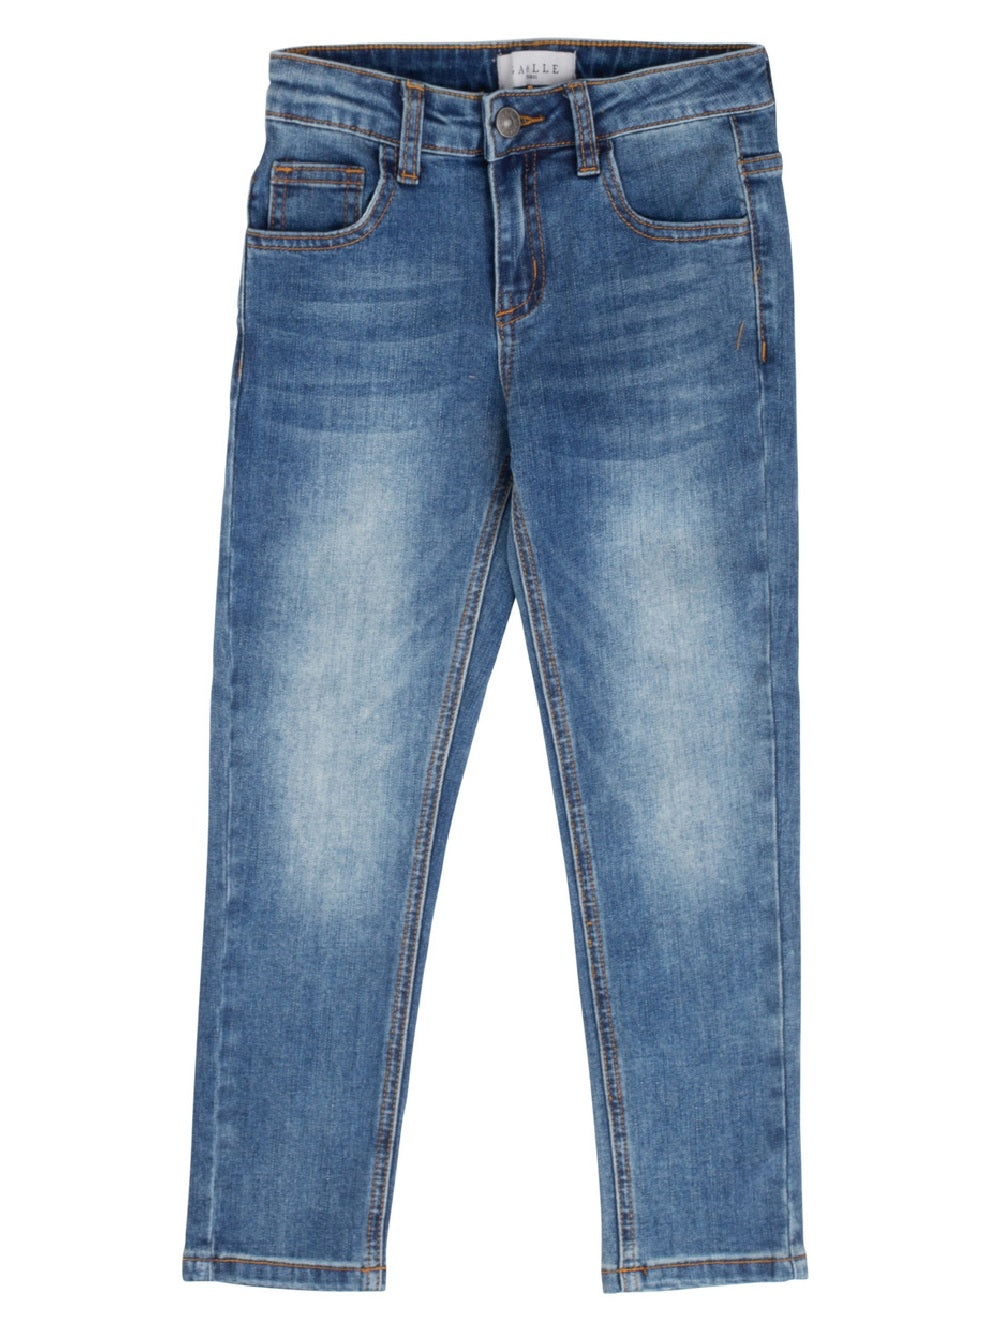 Jeans GaËlle Paris modello 2741D0304S in denim con logo e tasche finte sul retro